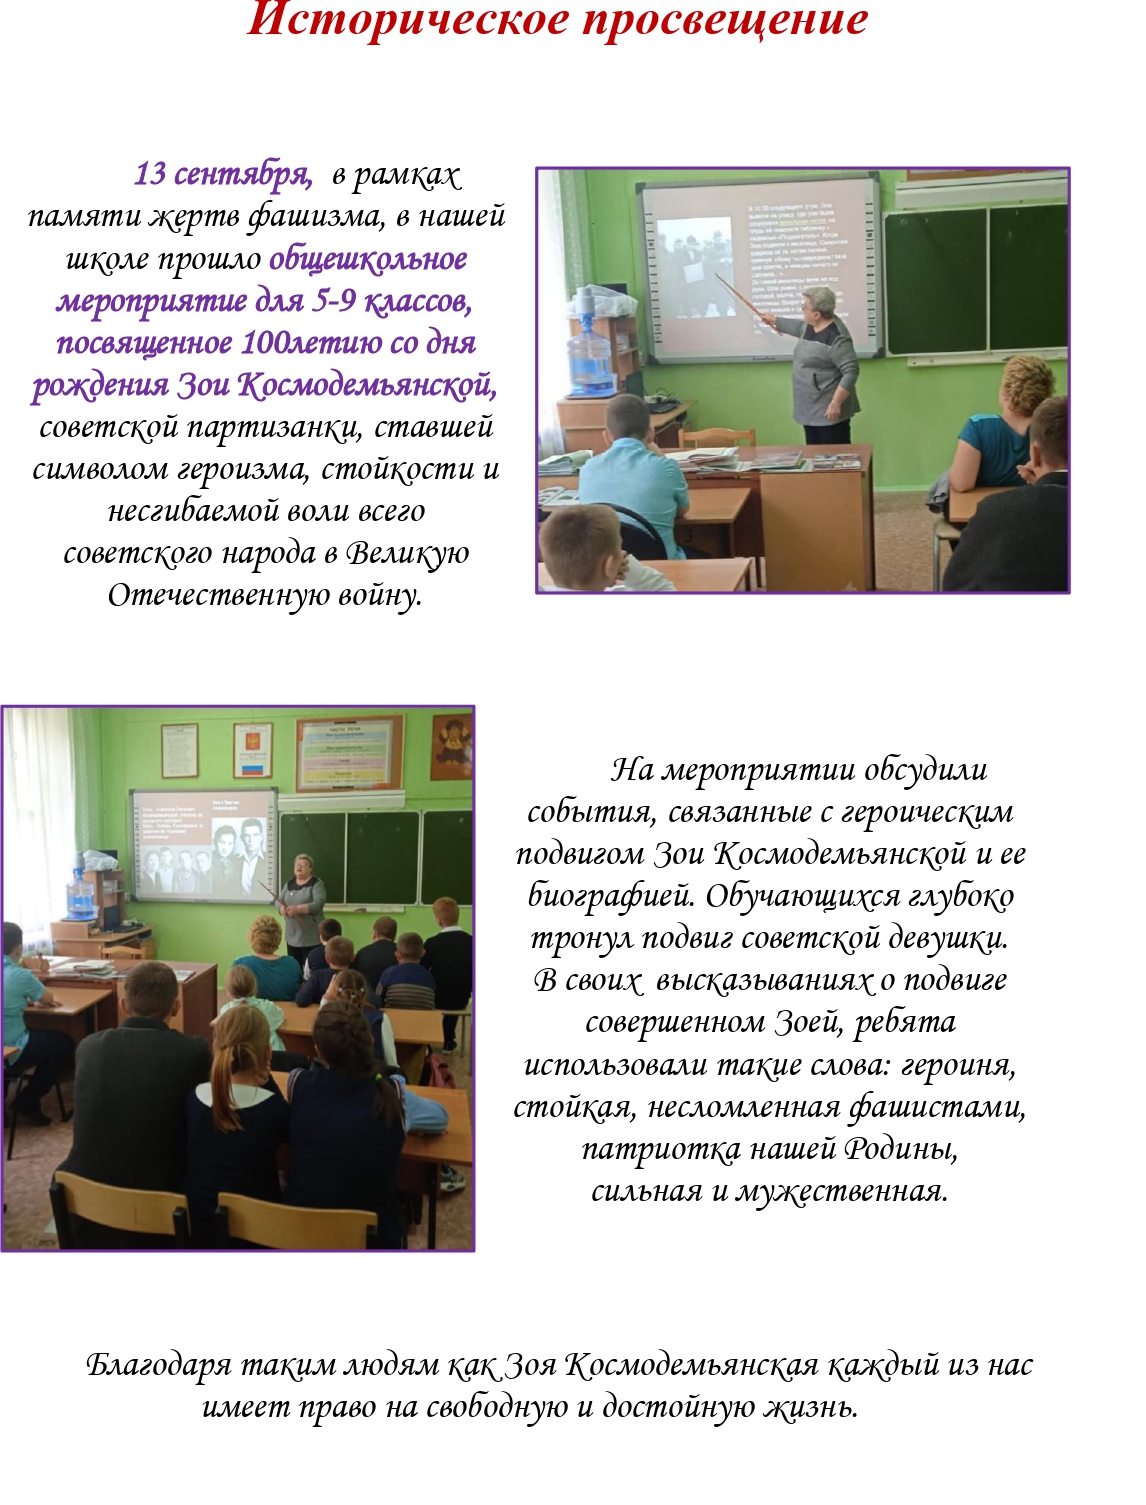 Школьная газета 2 cropped page 0002